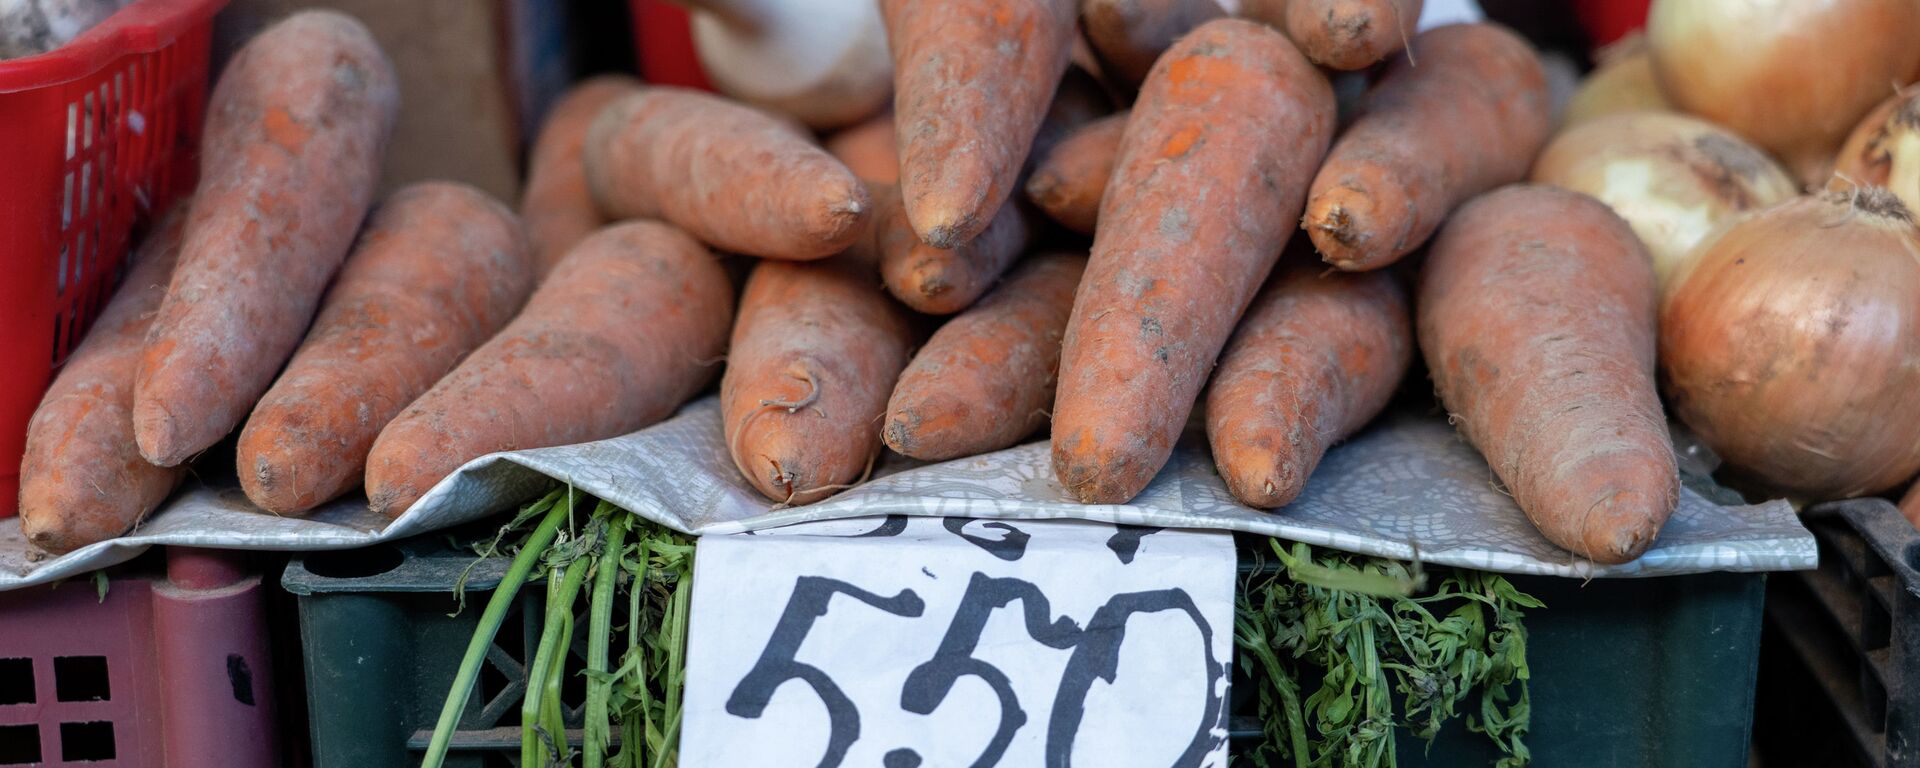 Овощи на рынке. морковь с ценником в 550 тенге за килограмм  - Sputnik Казахстан, 1920, 25.09.2021